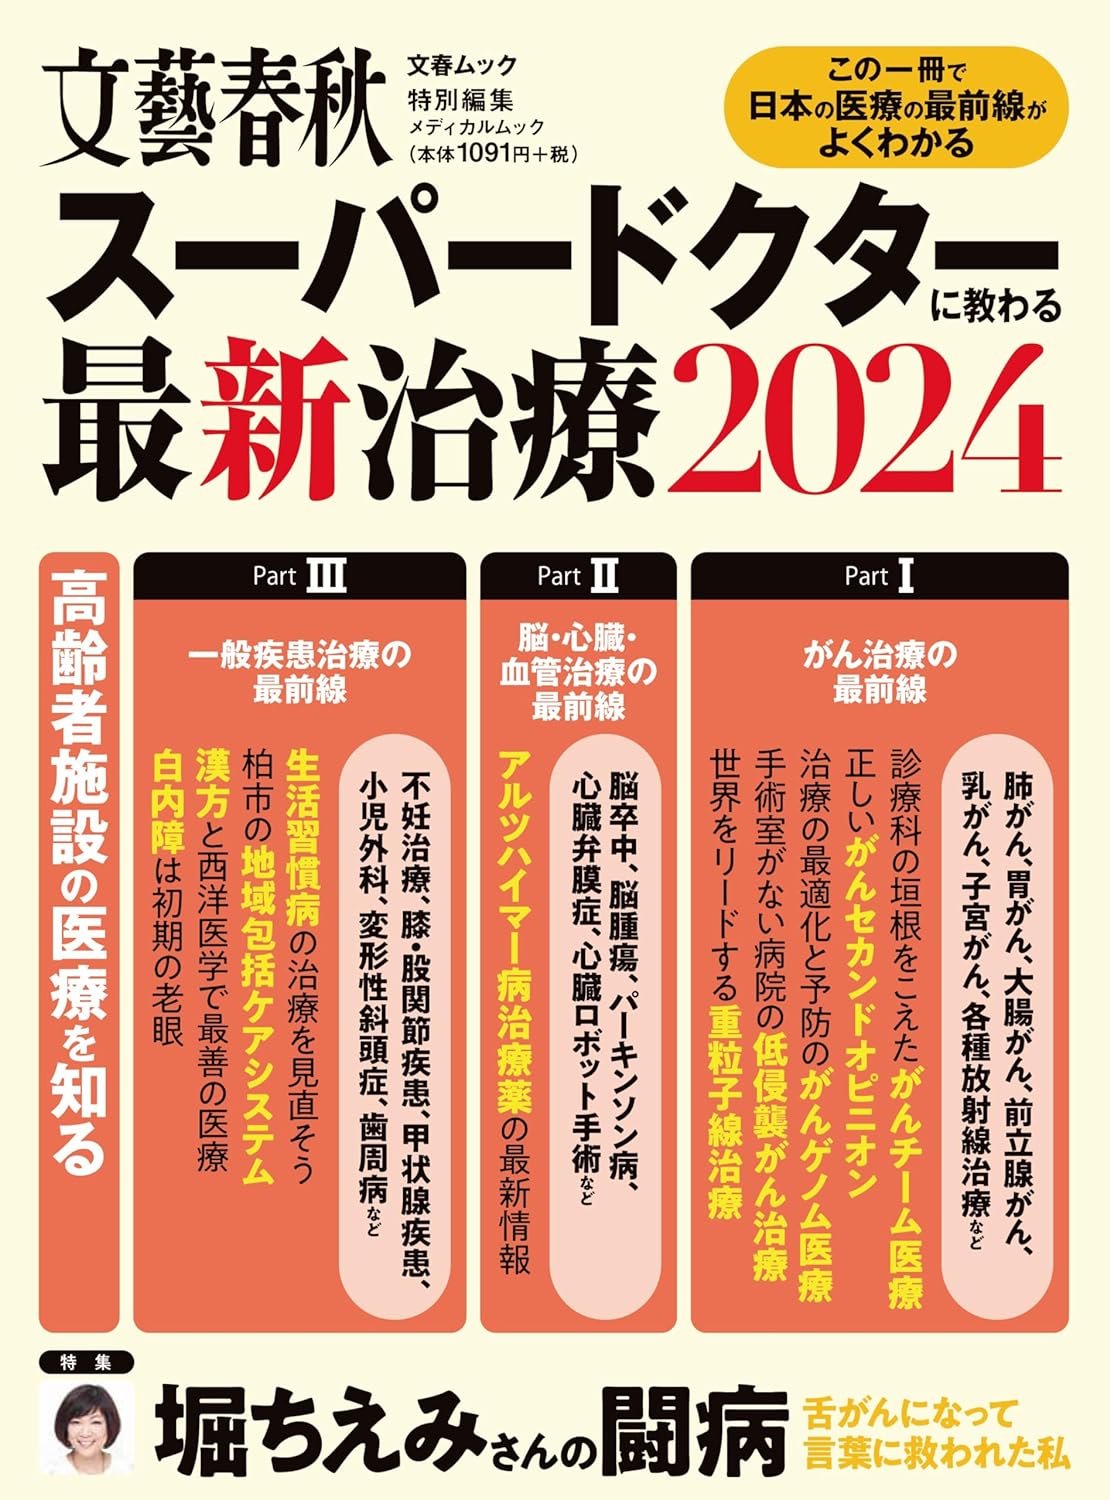 ス-パ-ドクタ-に敎わる最新治療2024 (文春ムック)